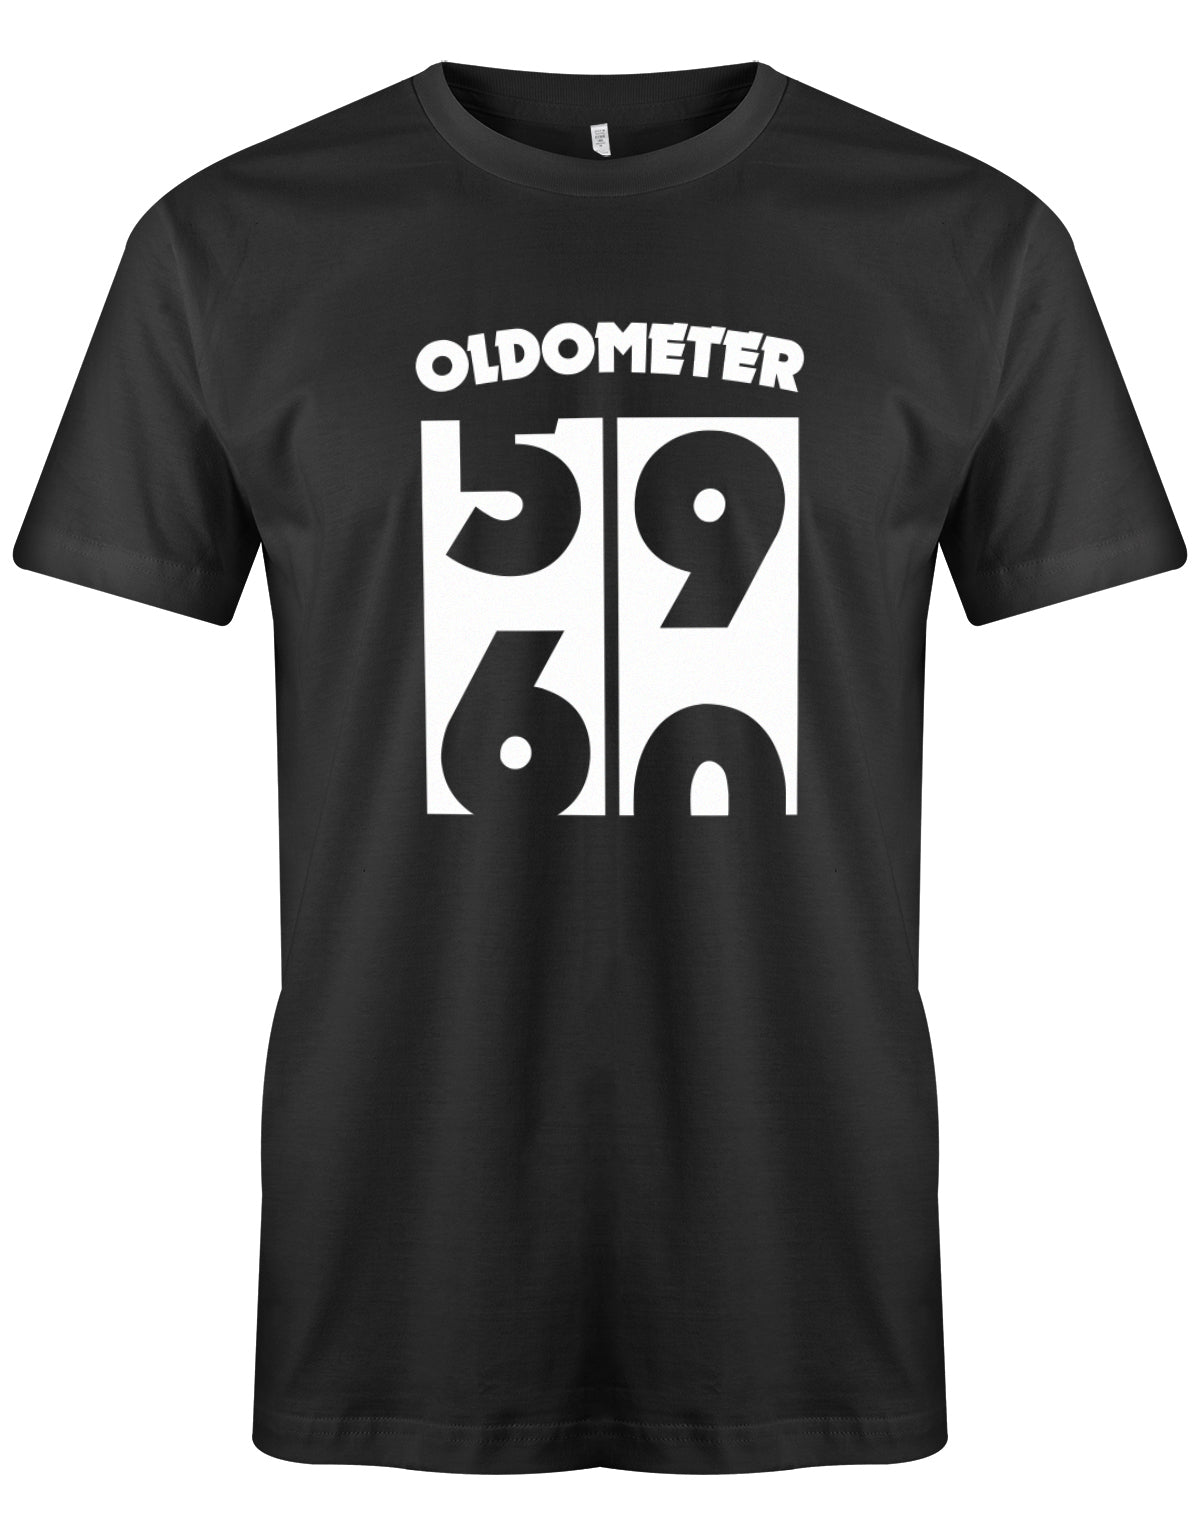 Lustiges T-Shirt zum 60. Geburtstag für den Mann Bedruckt mit Oldometer der wechsel von der 59 zu 60 Jahren. Schwarz